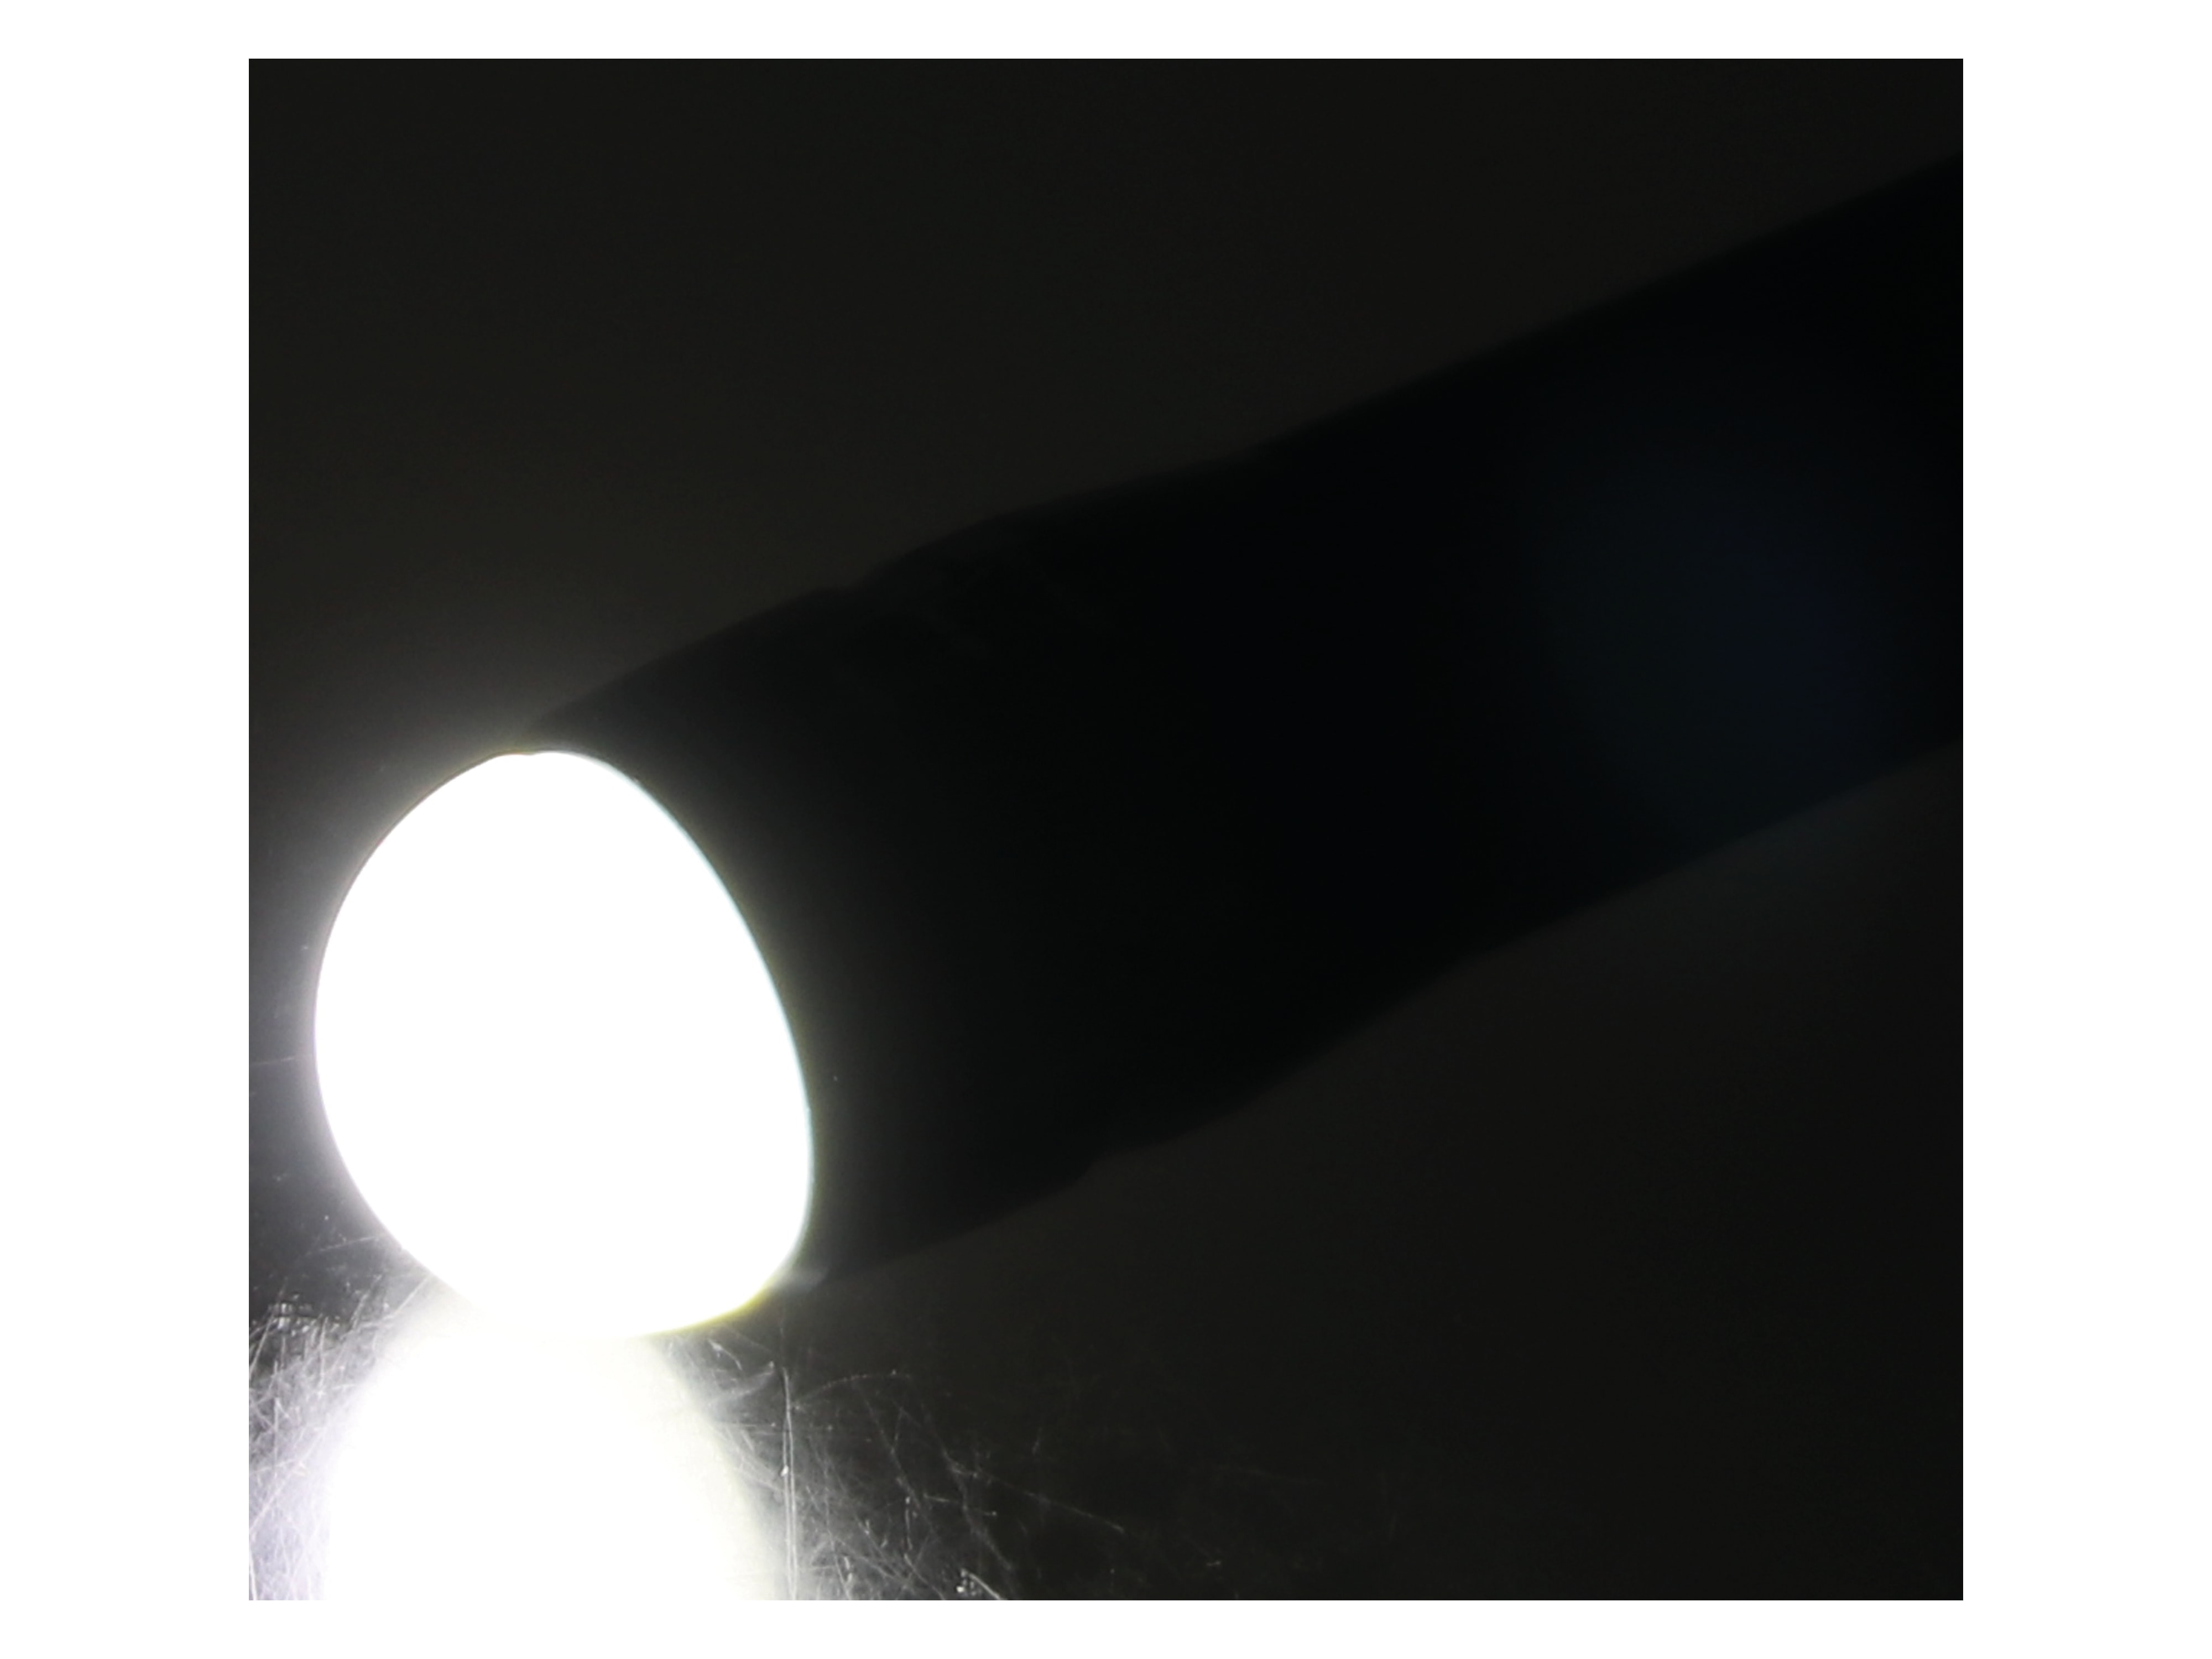 LED-Taschenlampe, WTE-490M-1, Alu, 400 lm, blau